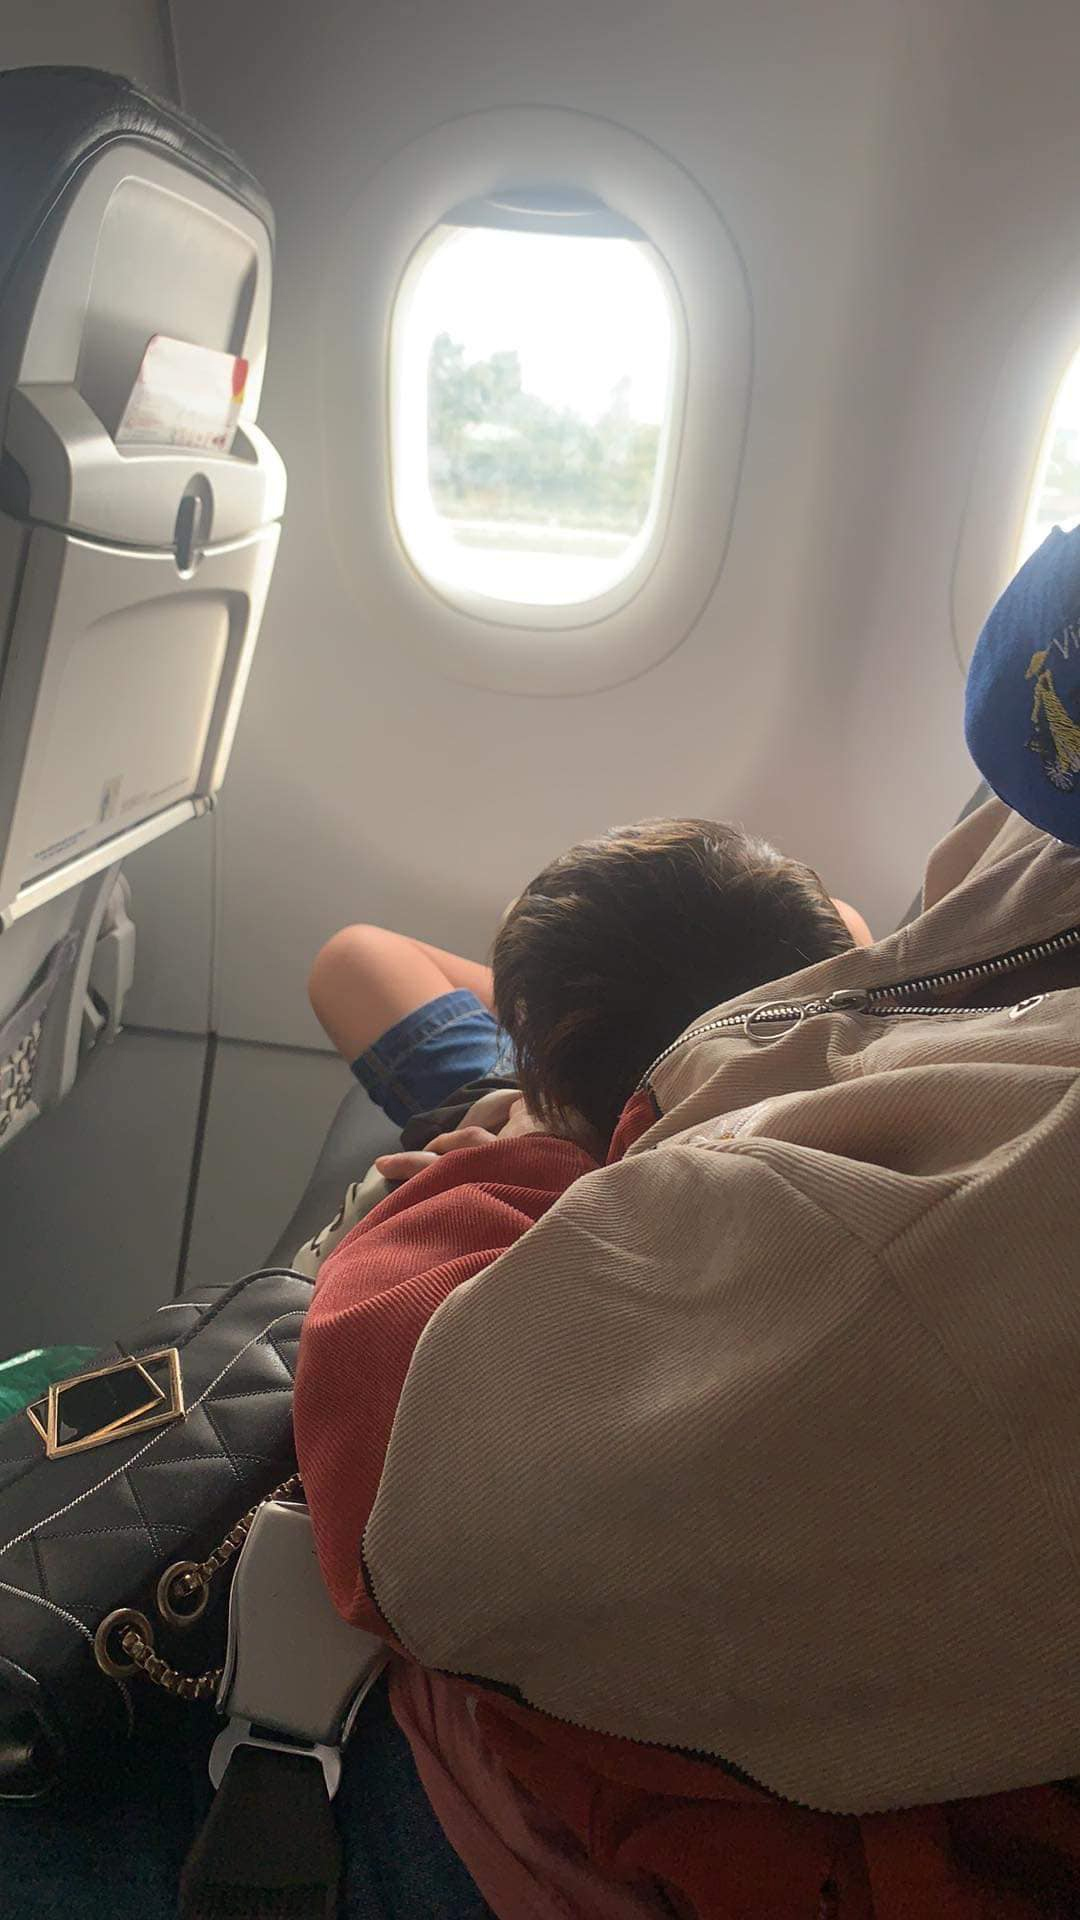 Sau khi phát hiện đứa trẻ ngồi cạnh cửa sổ, phi hành đoàn mới biết số người trên máy bay đã thừa 1 người so với số vé bán ra (Ảnh minh họa)